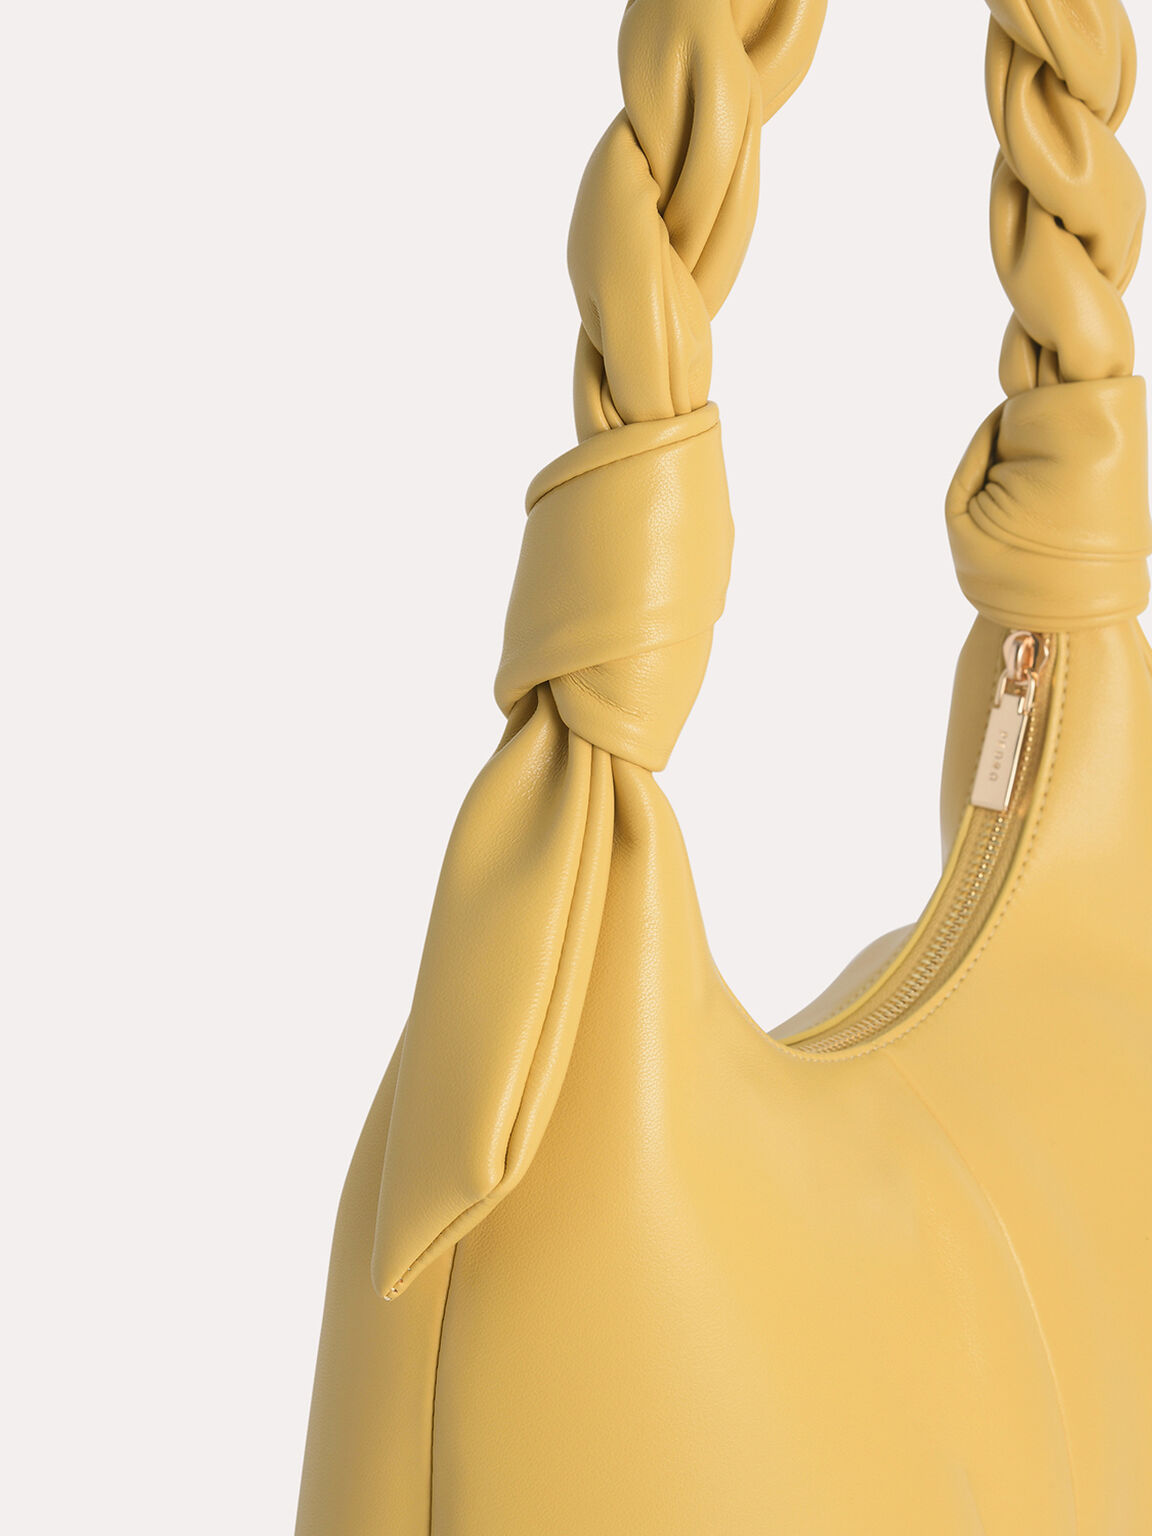 Hobo Bag with Twisted Top Handle, Yellow